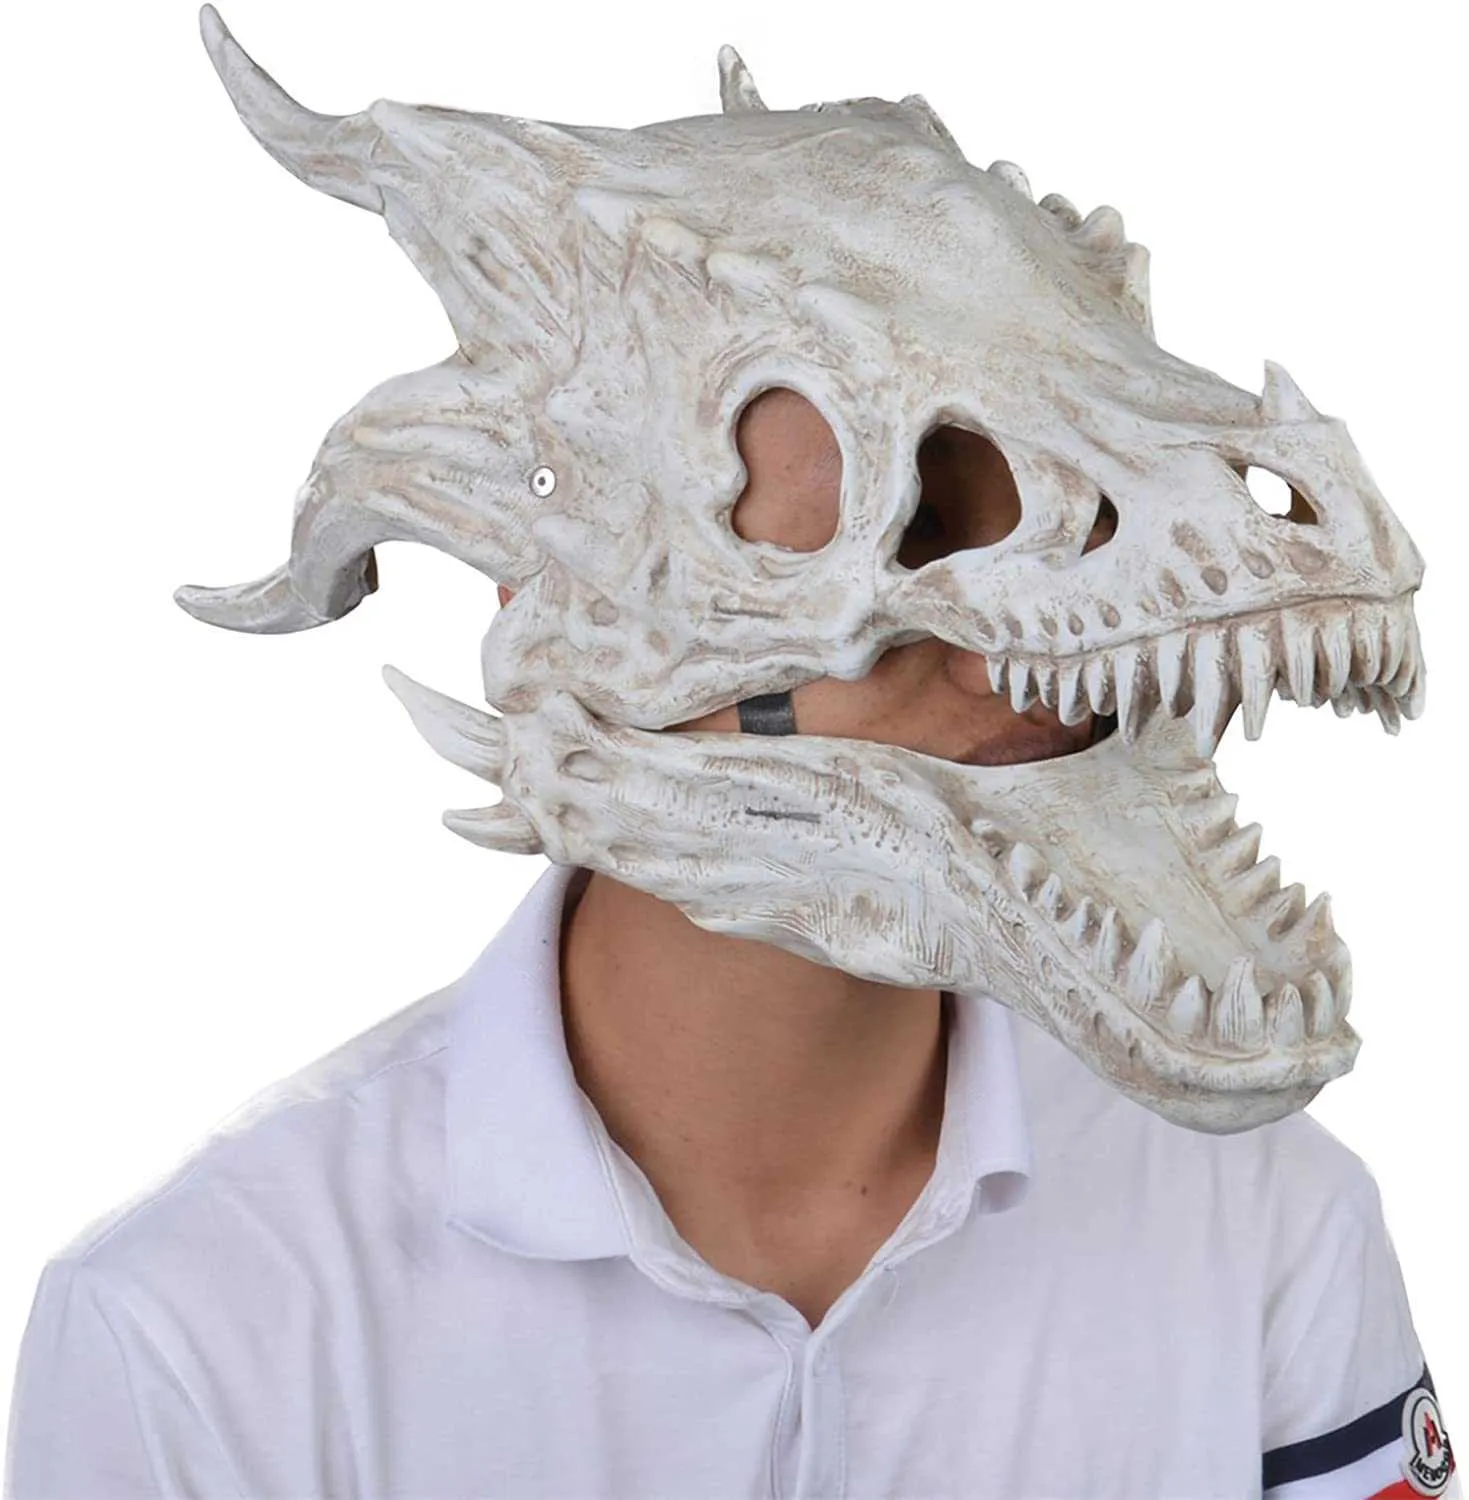 2021 Neue Drachenmaske Bewegliche Drachen / Bewegliche Kiefer Dino Maske Bewegung Backen Dinosaurier Dekor Maske für Party Halloween Geburtstag Dekoration x0803